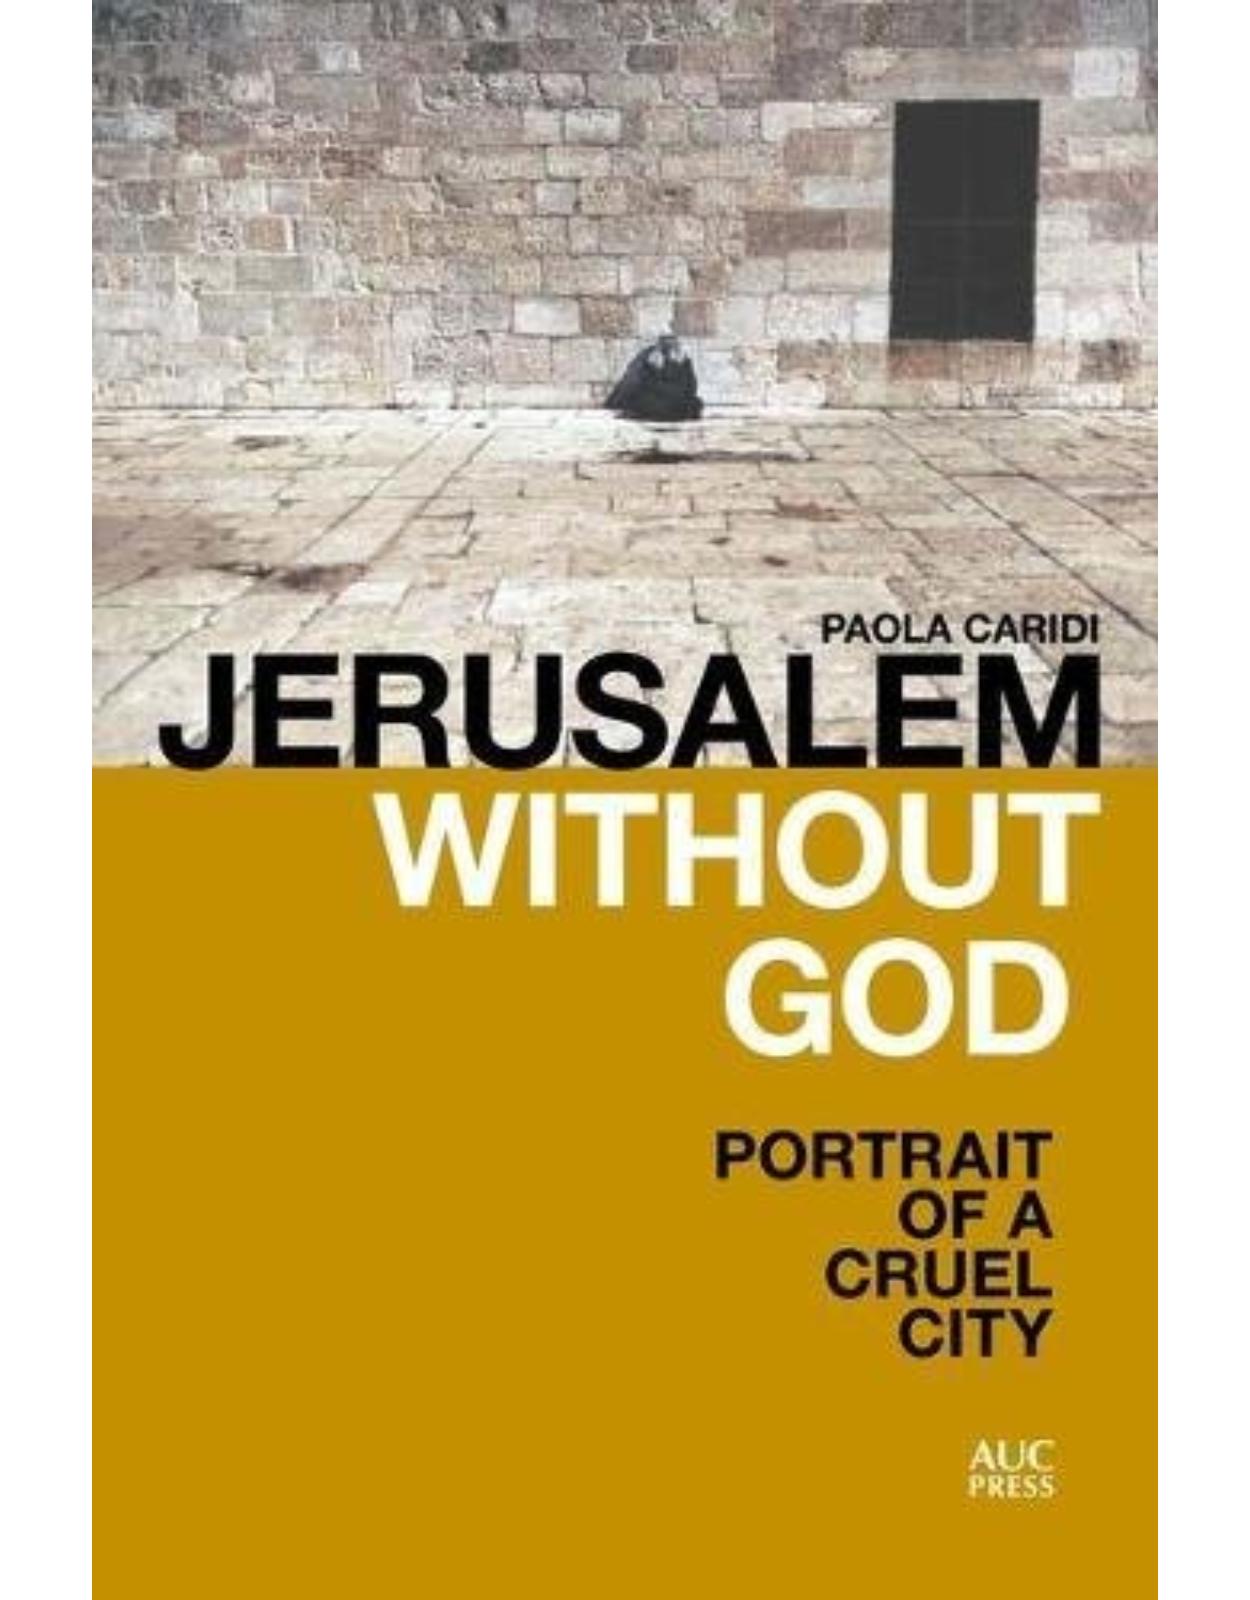 Jerusalem without God: Portrait of a Cruel City